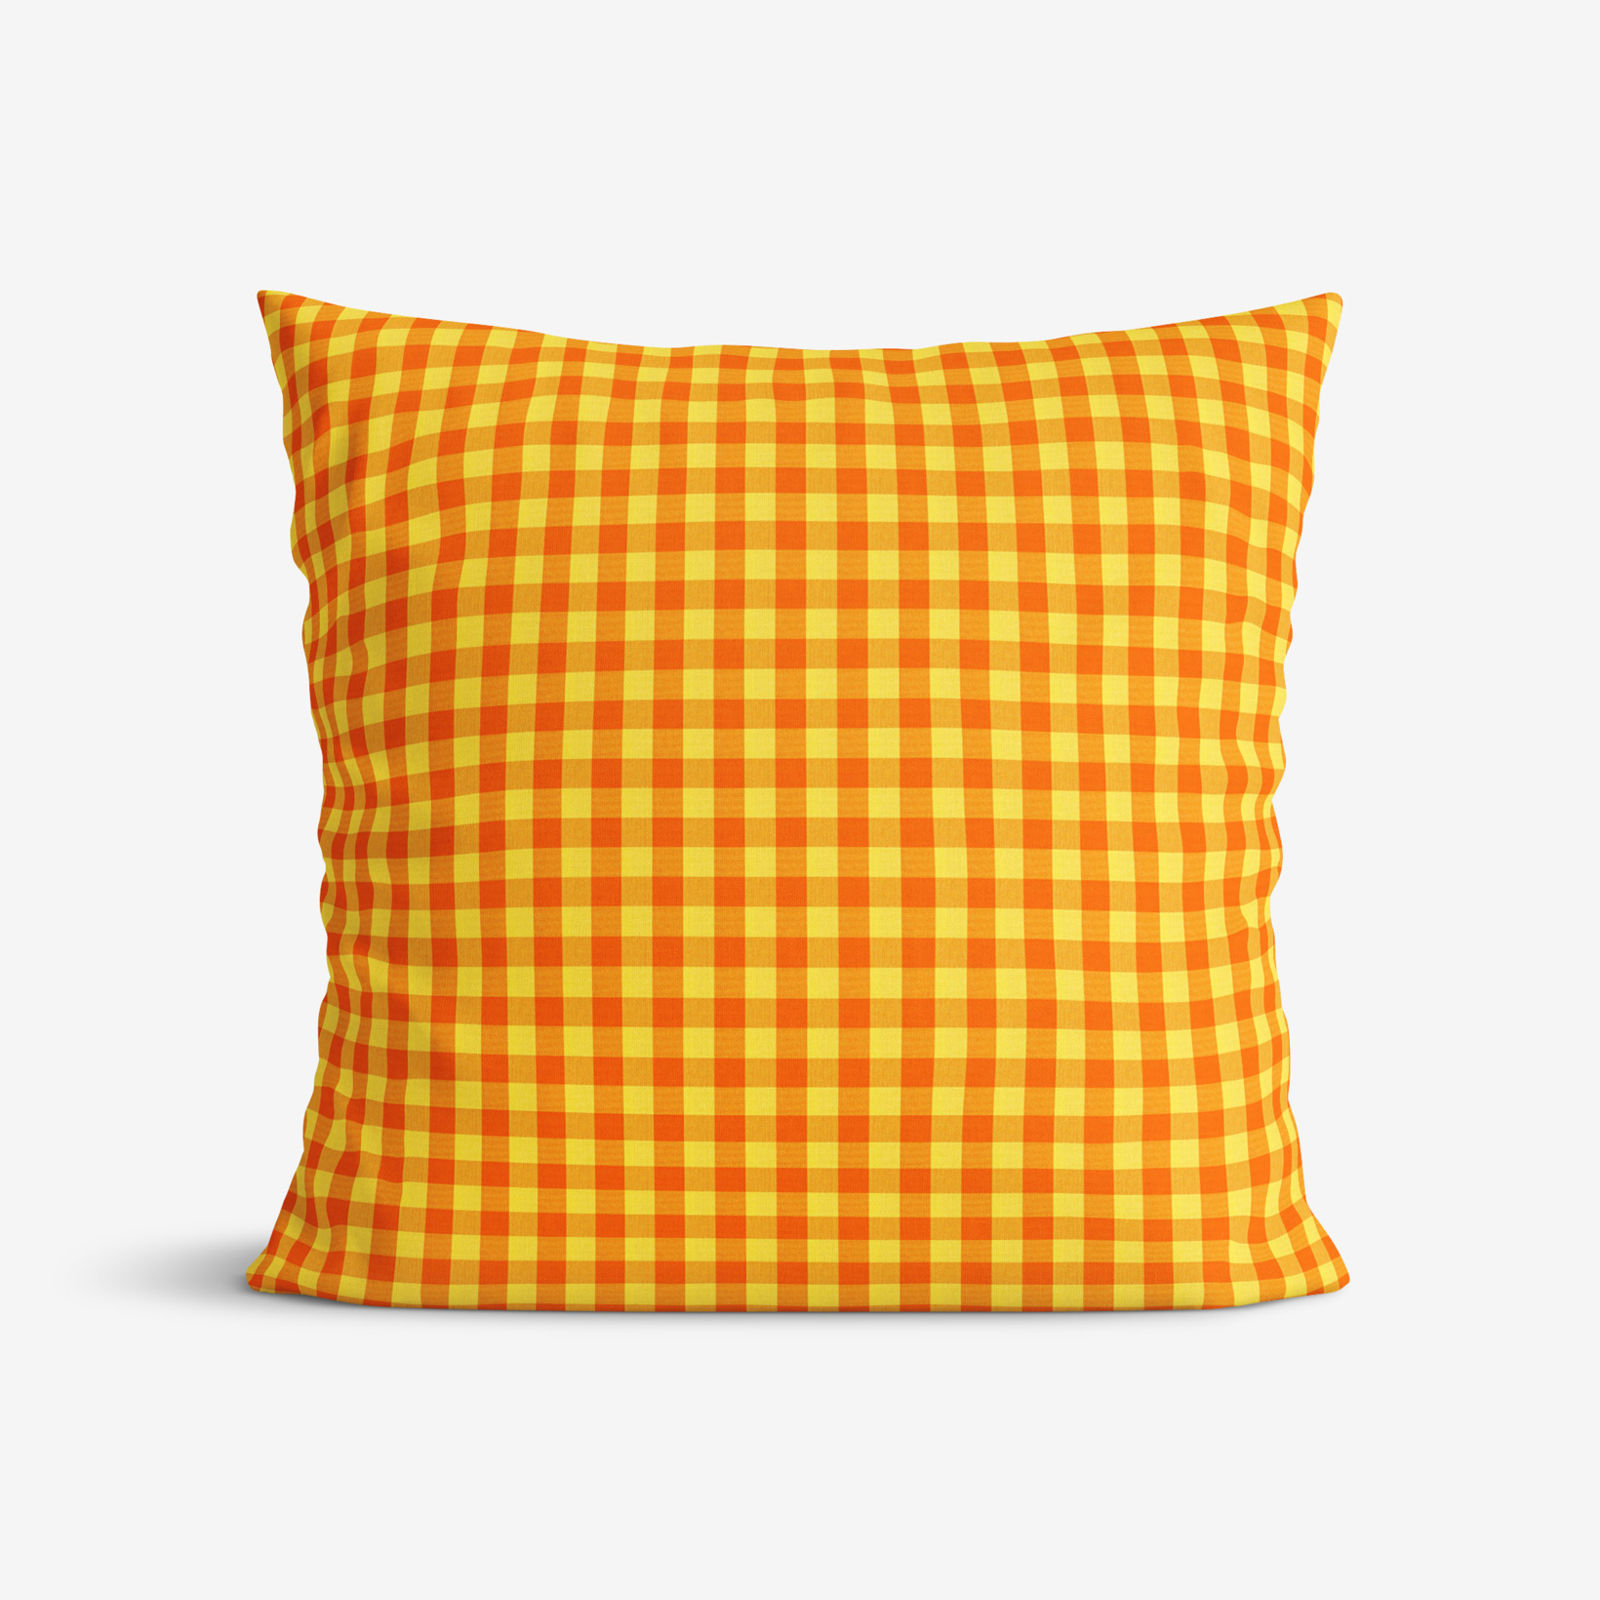 Poszewka na poduszkę bawełniana Kanafas - mała pomarańczowo-żółta kratka